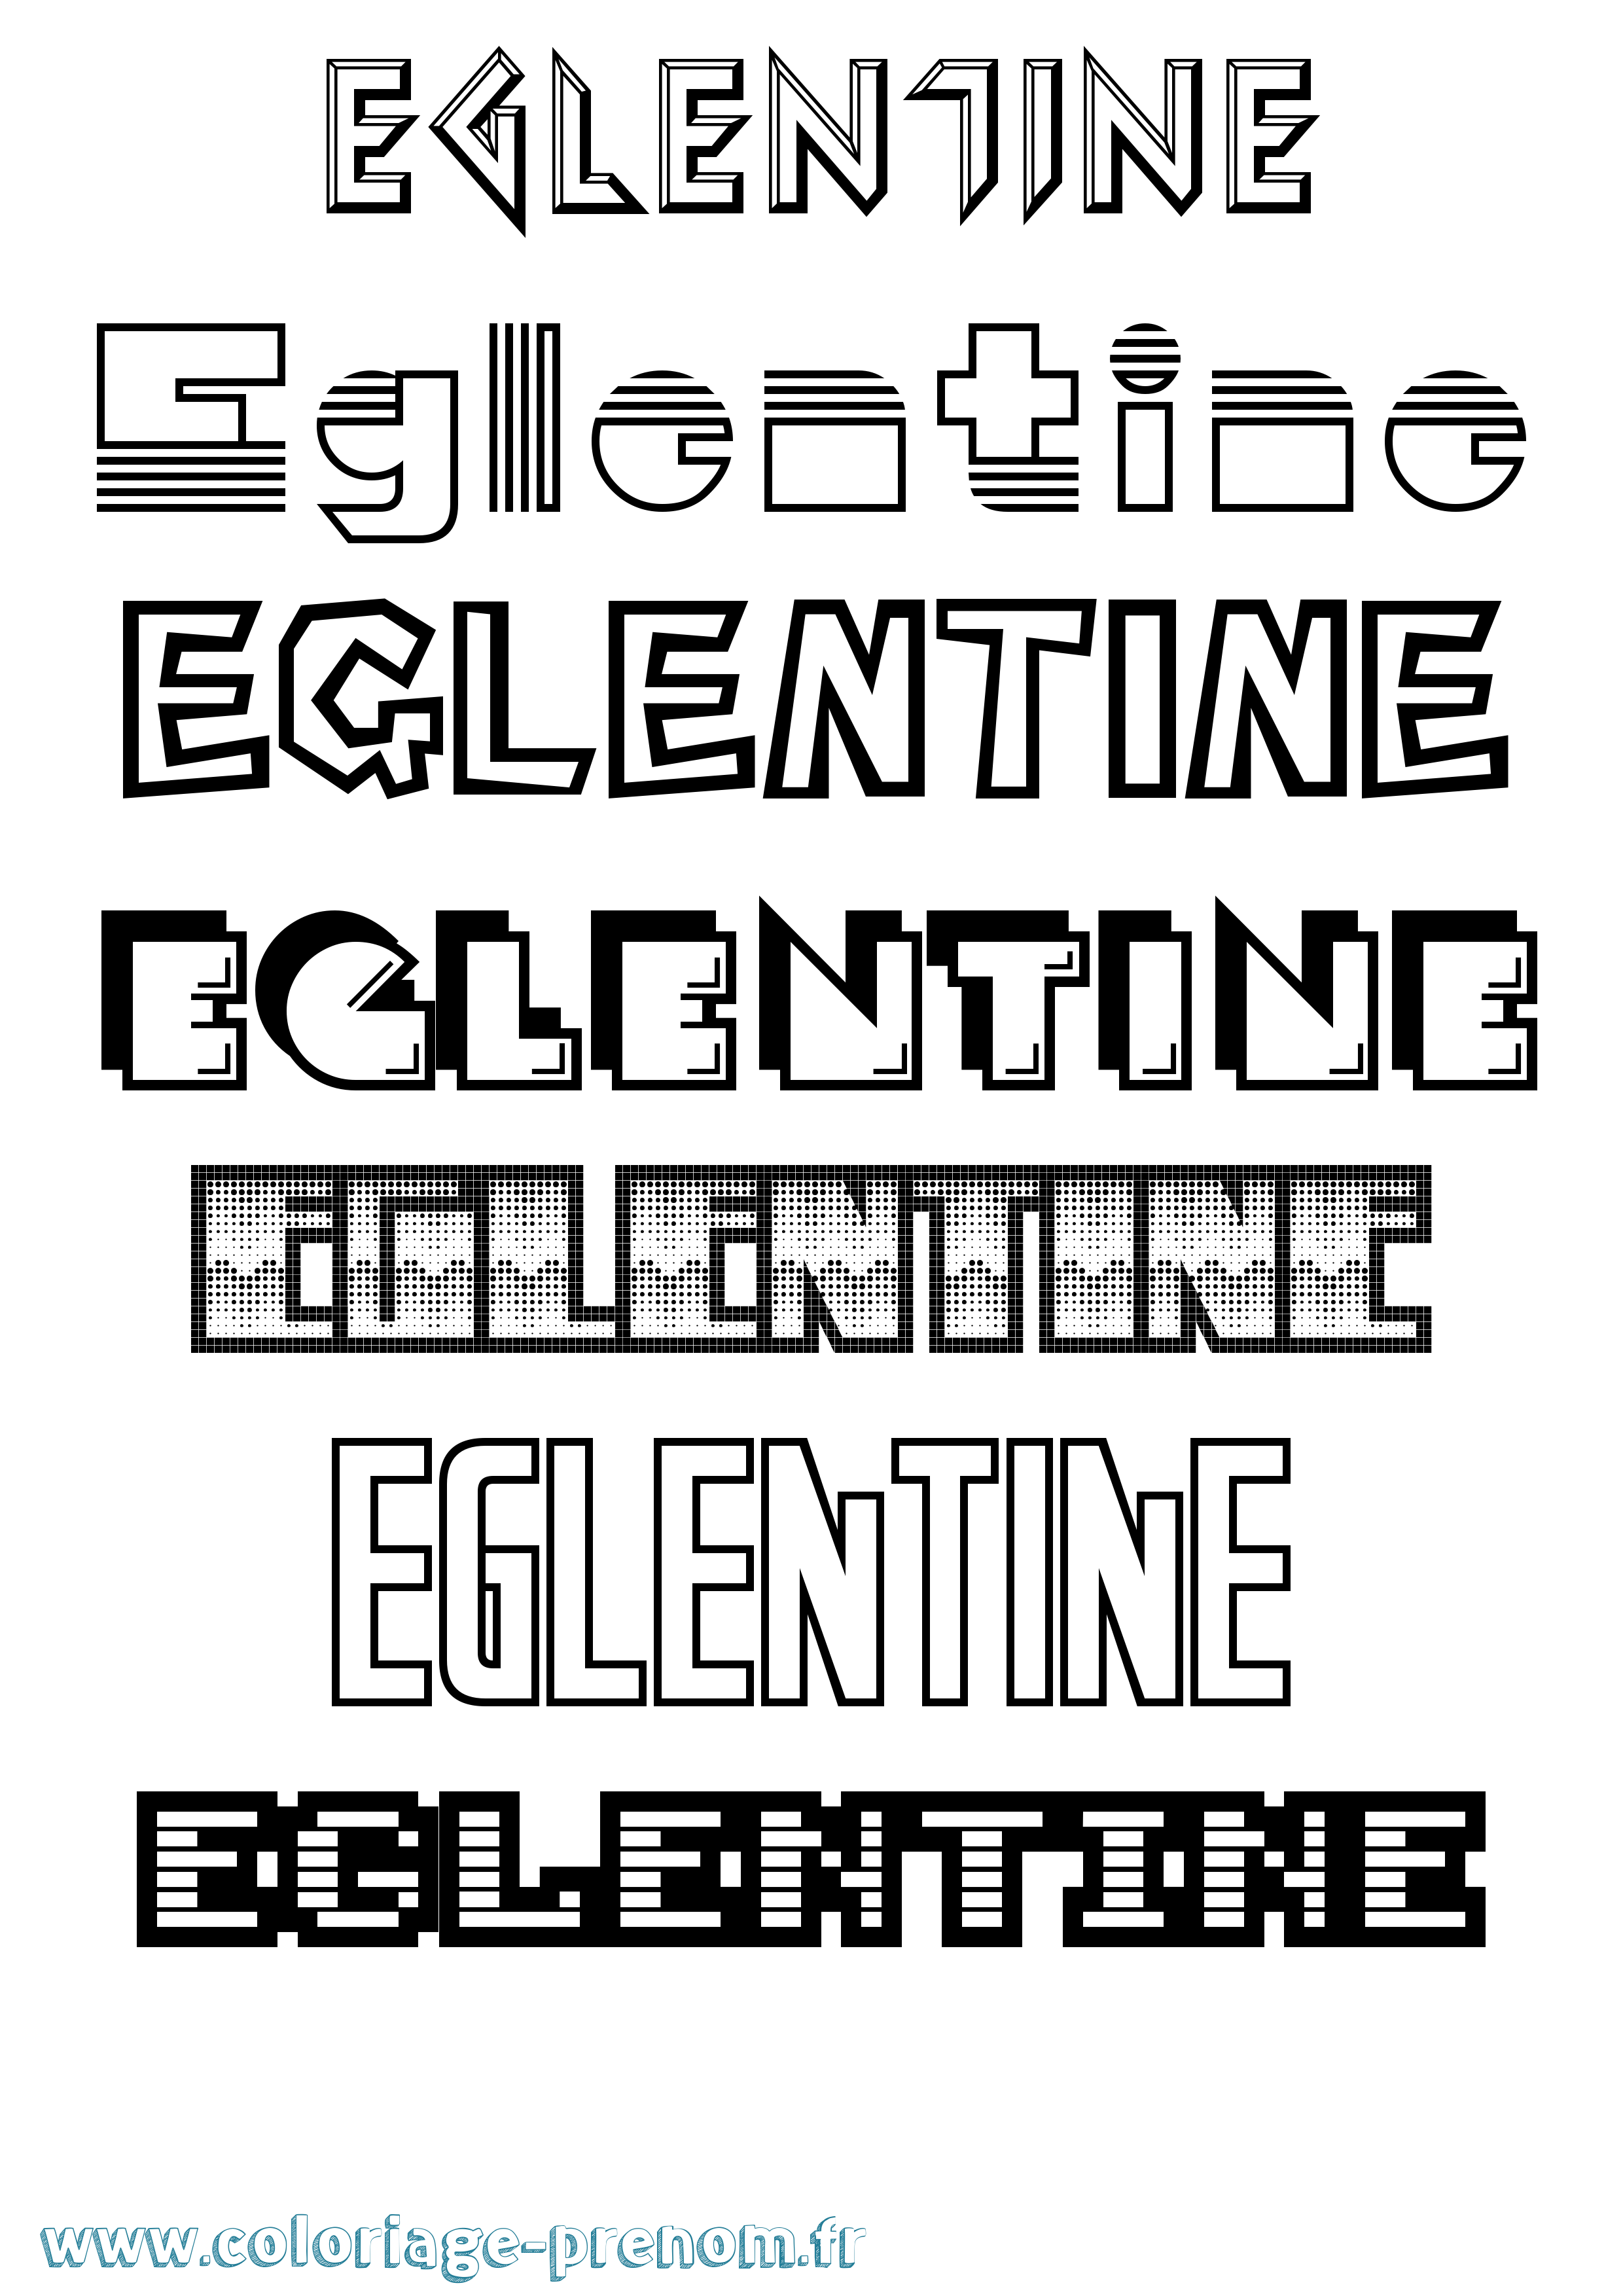 Coloriage prénom Eglentine Jeux Vidéos